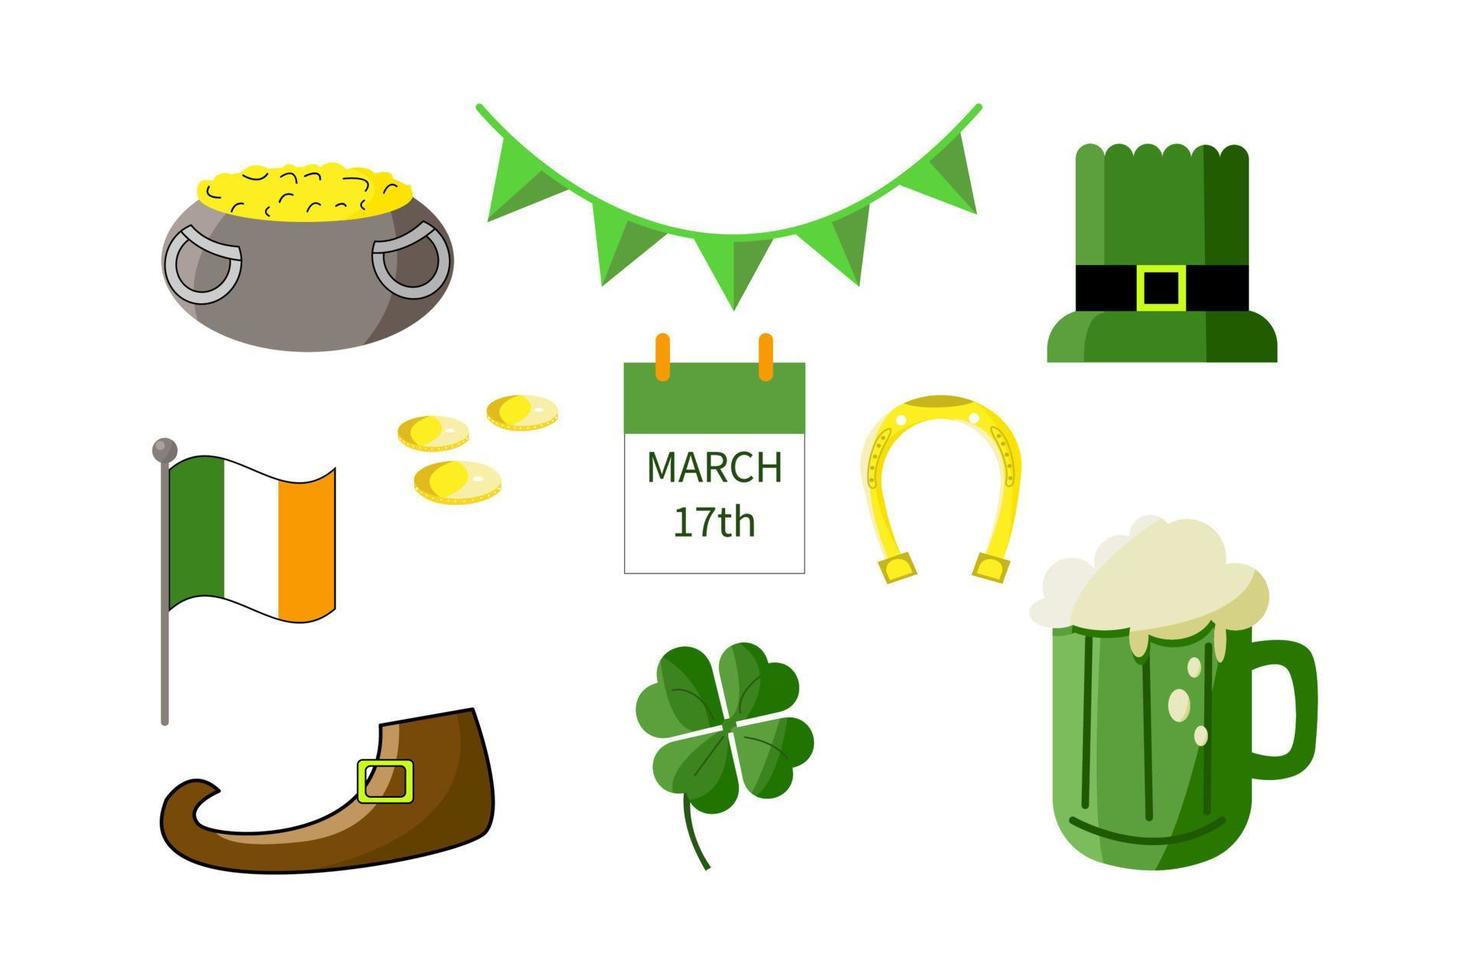 Saint Patricks Day design element set. Holiday symbols pot of gold, Patrick's hat, ireland flag, calendar march 17, golden horseshoe, beer mug, clover leaf, shoe, coins, flag garland vector